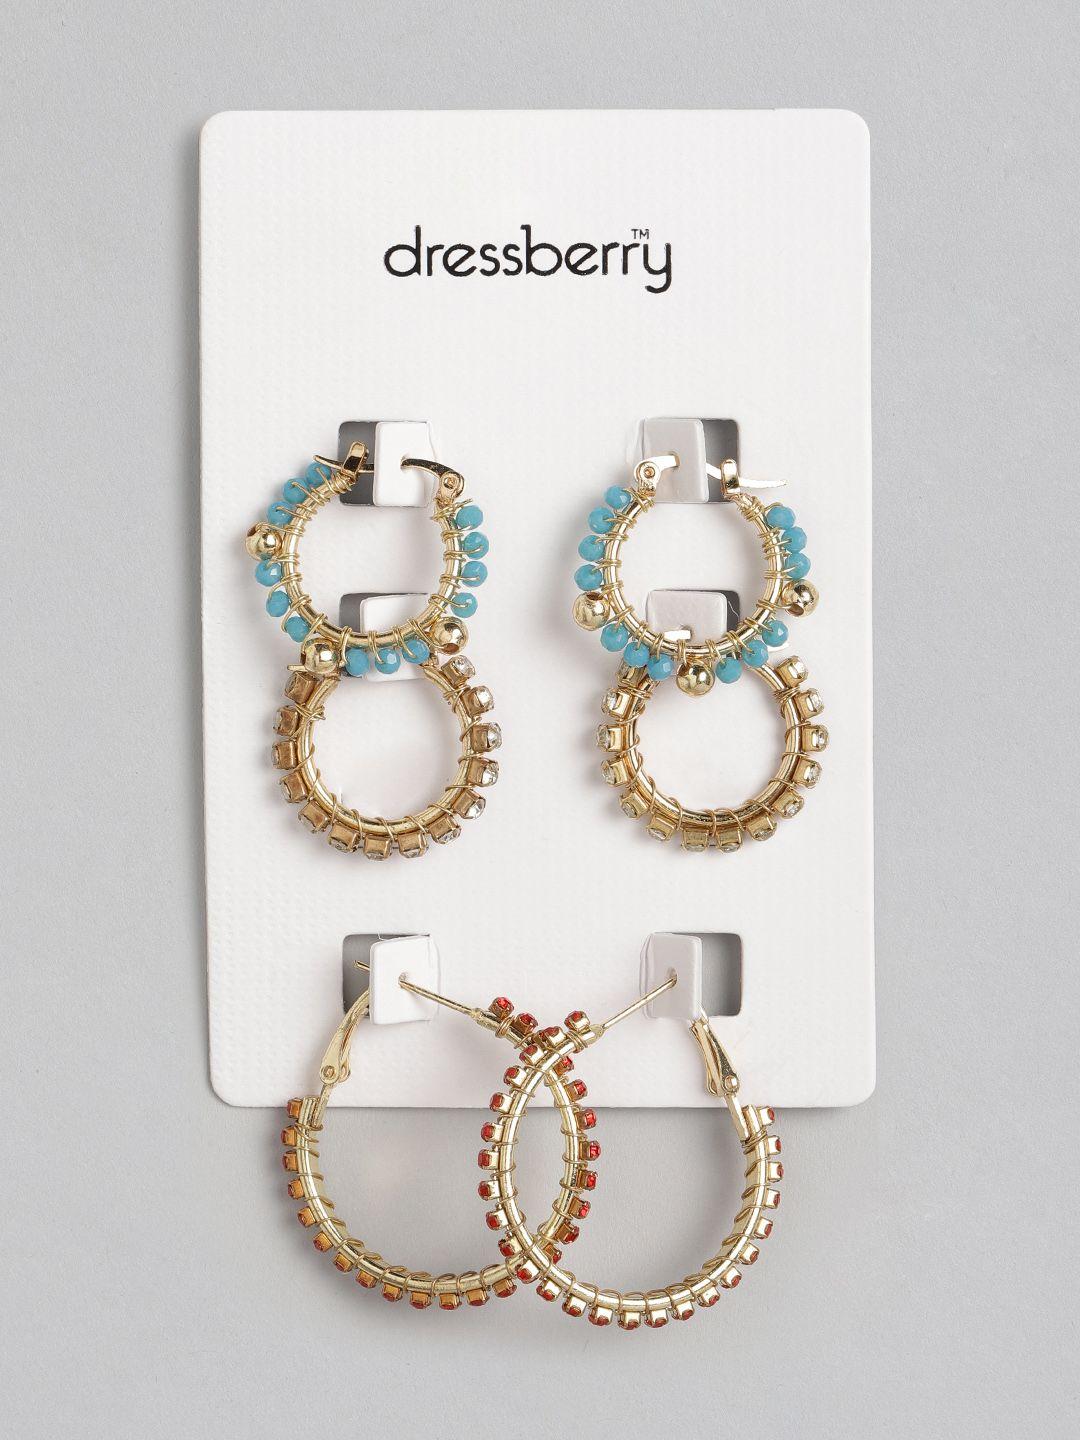 dressberry set of 3 hoop earrings